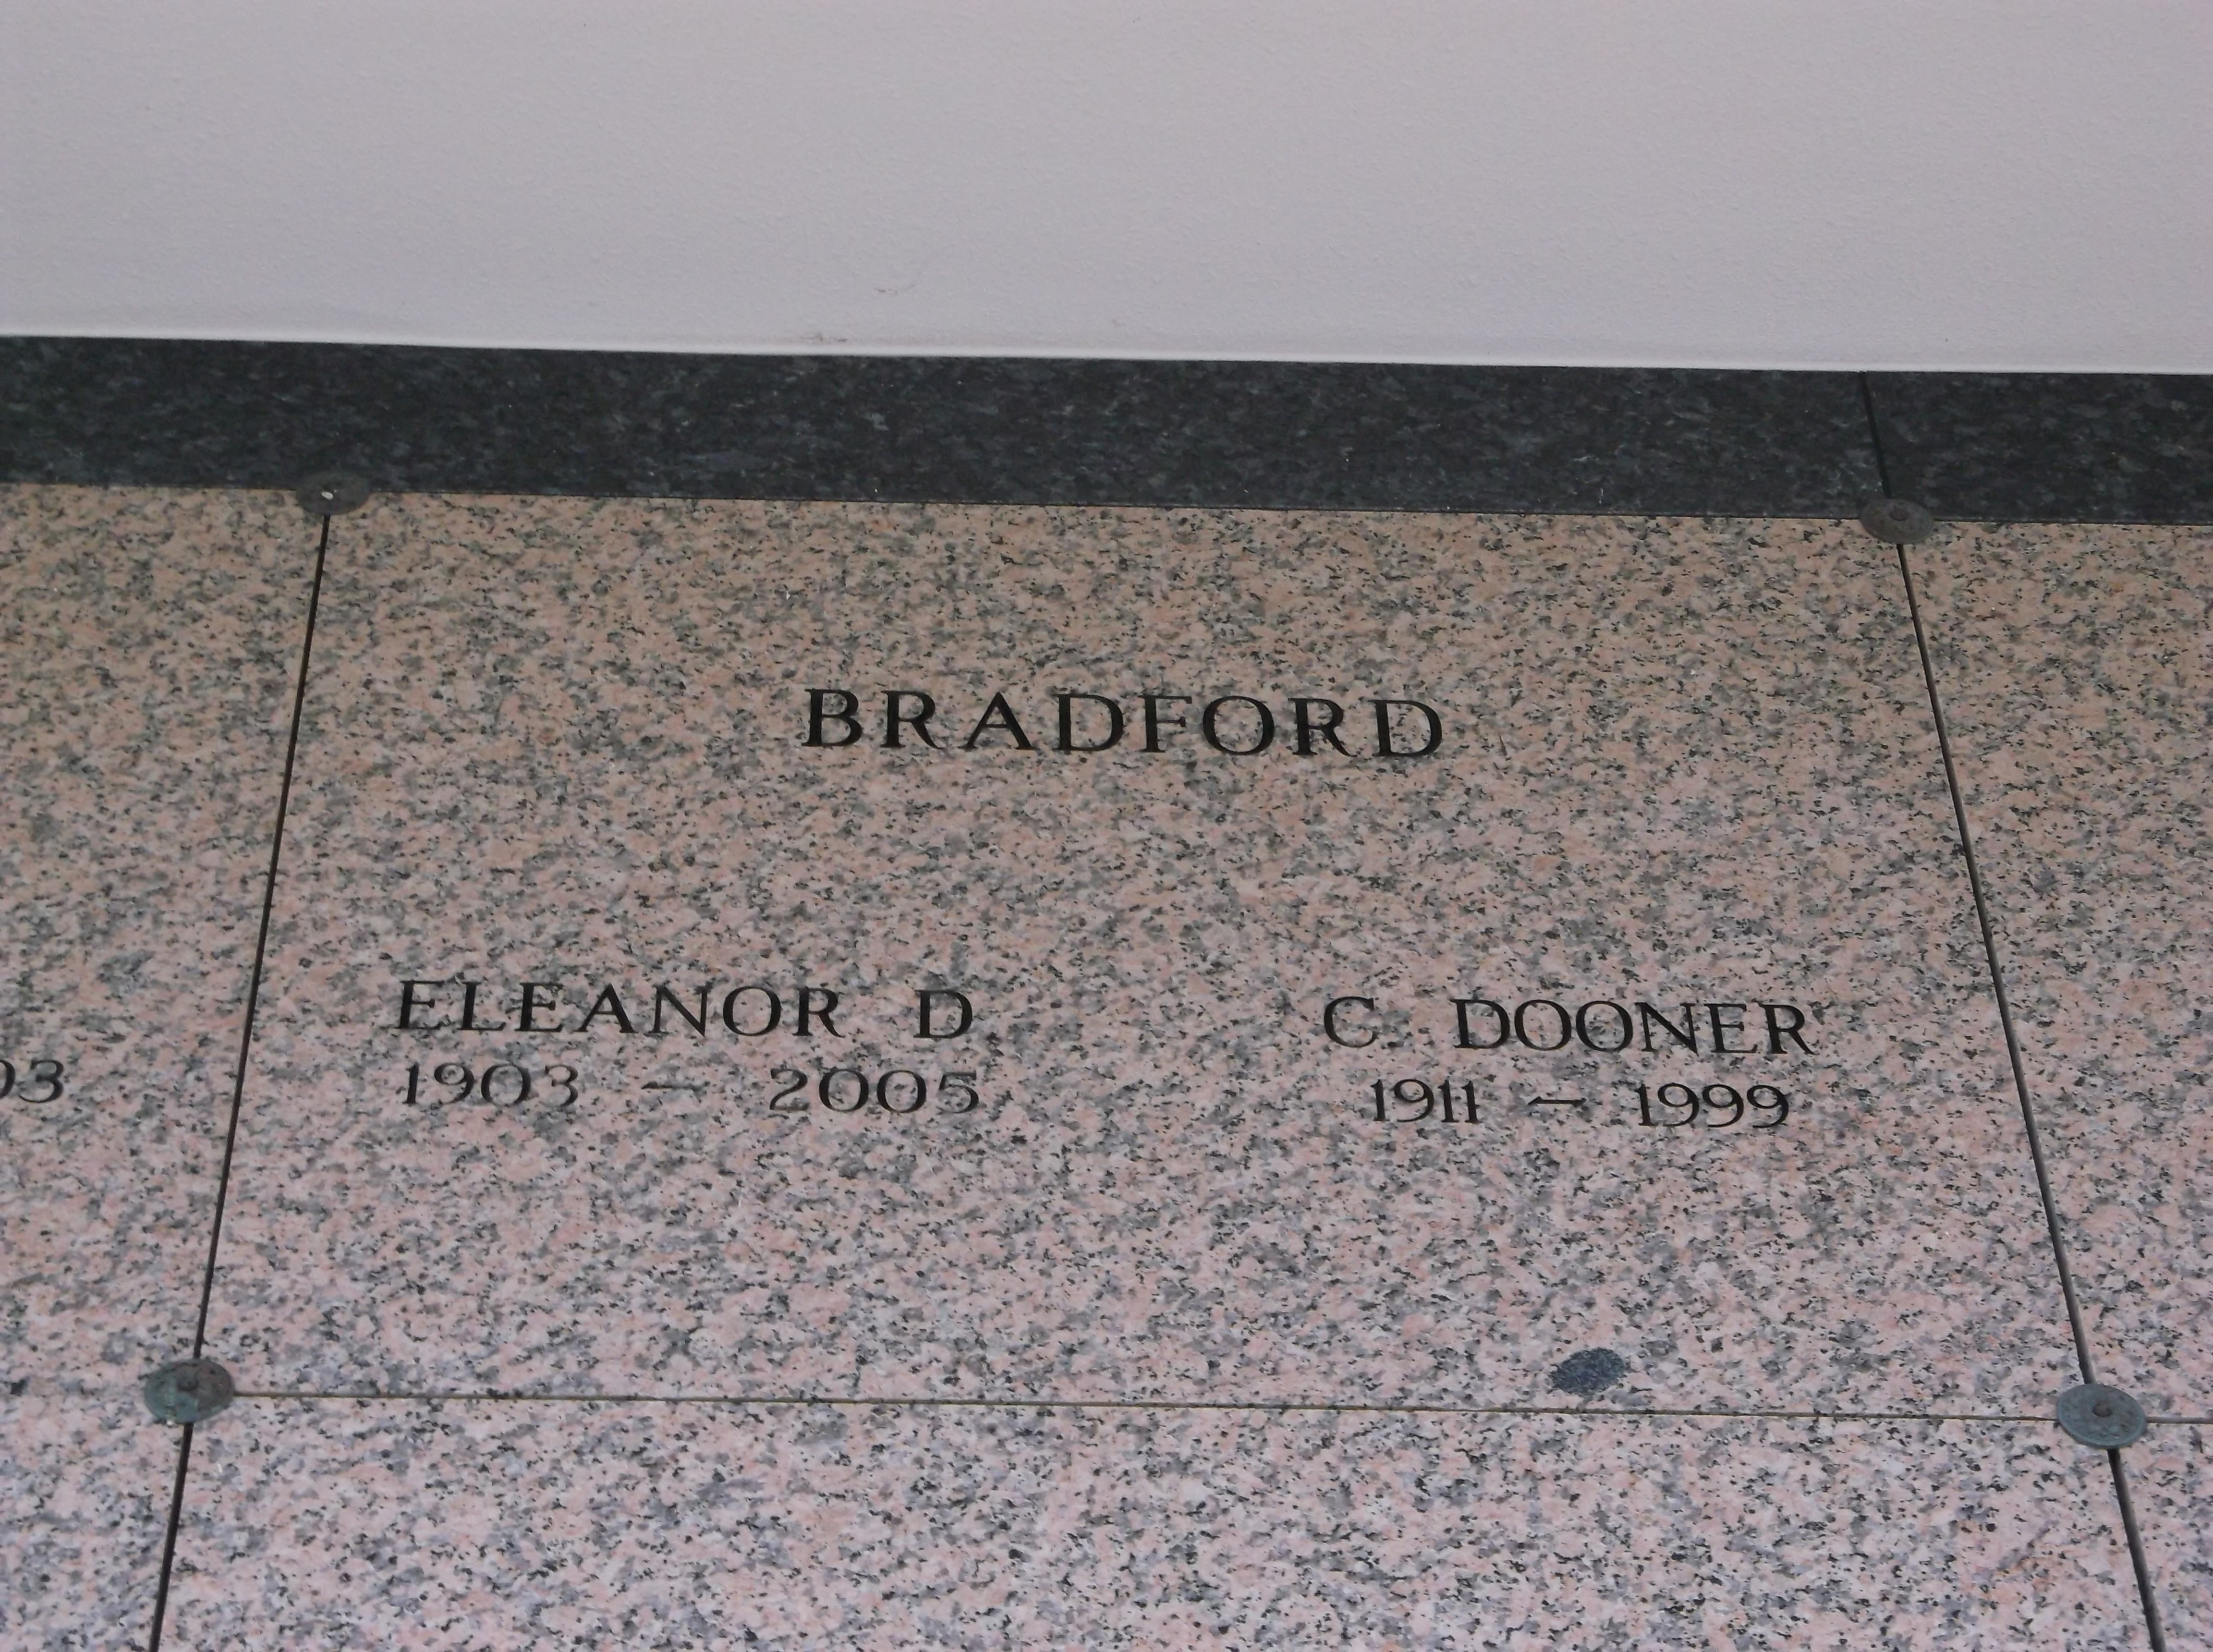 Eleanor D Bradford